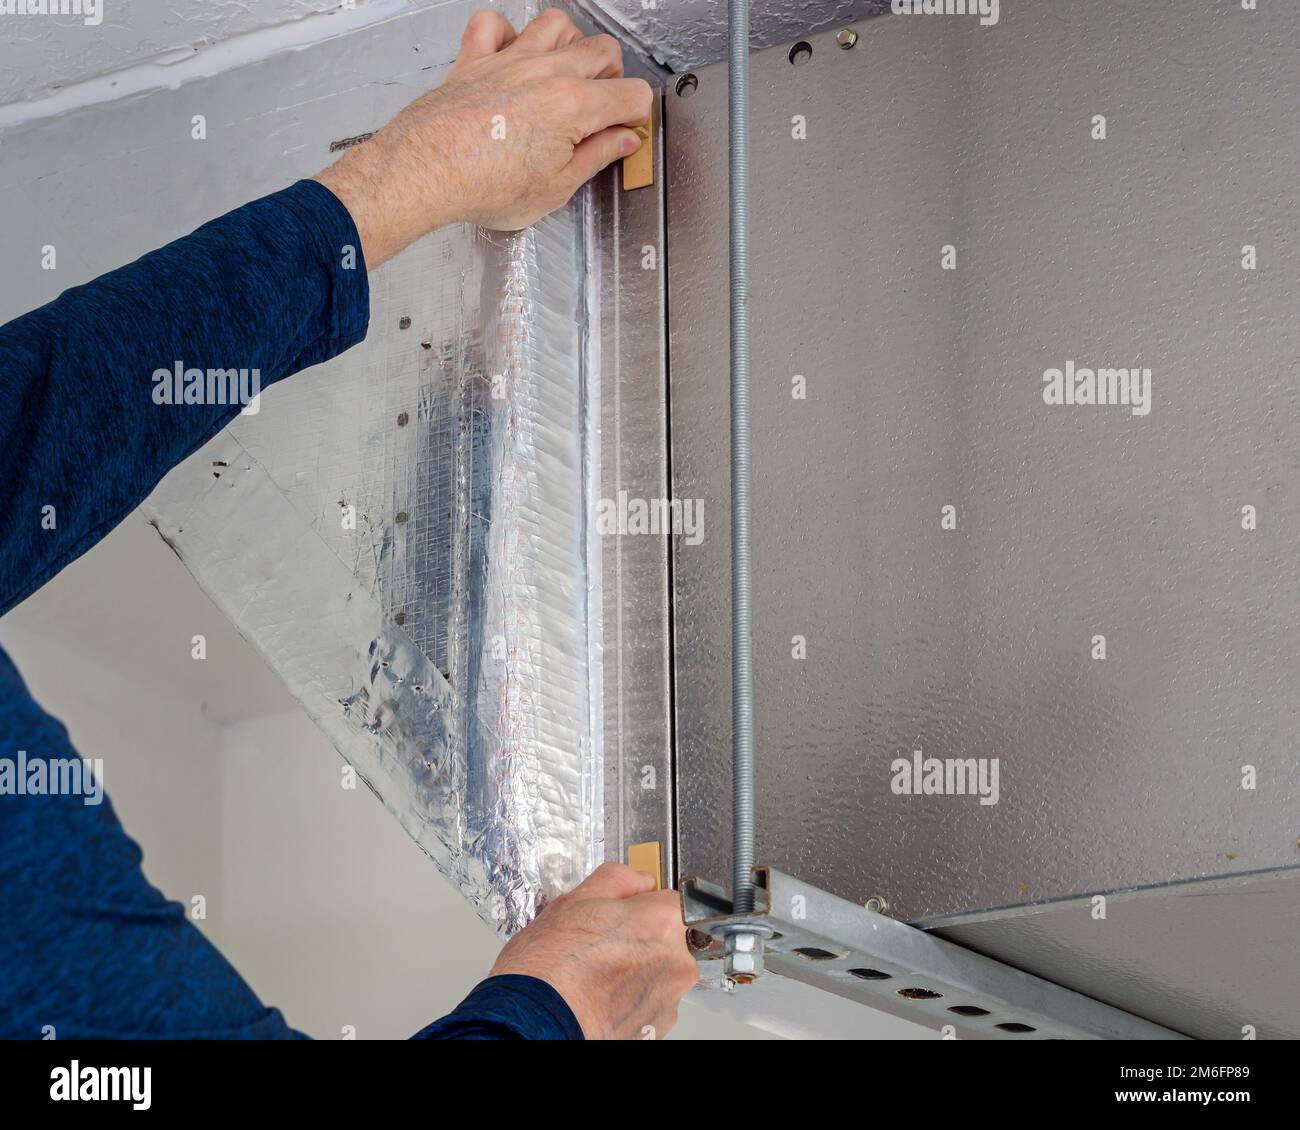 Un technicien d'entretien HVAC change le filtre à air intérieur sale dans le système de chauffage et de climatisation résidentiel. Entretien du système de ventilation de conduit d'air domestique Banque D'Images